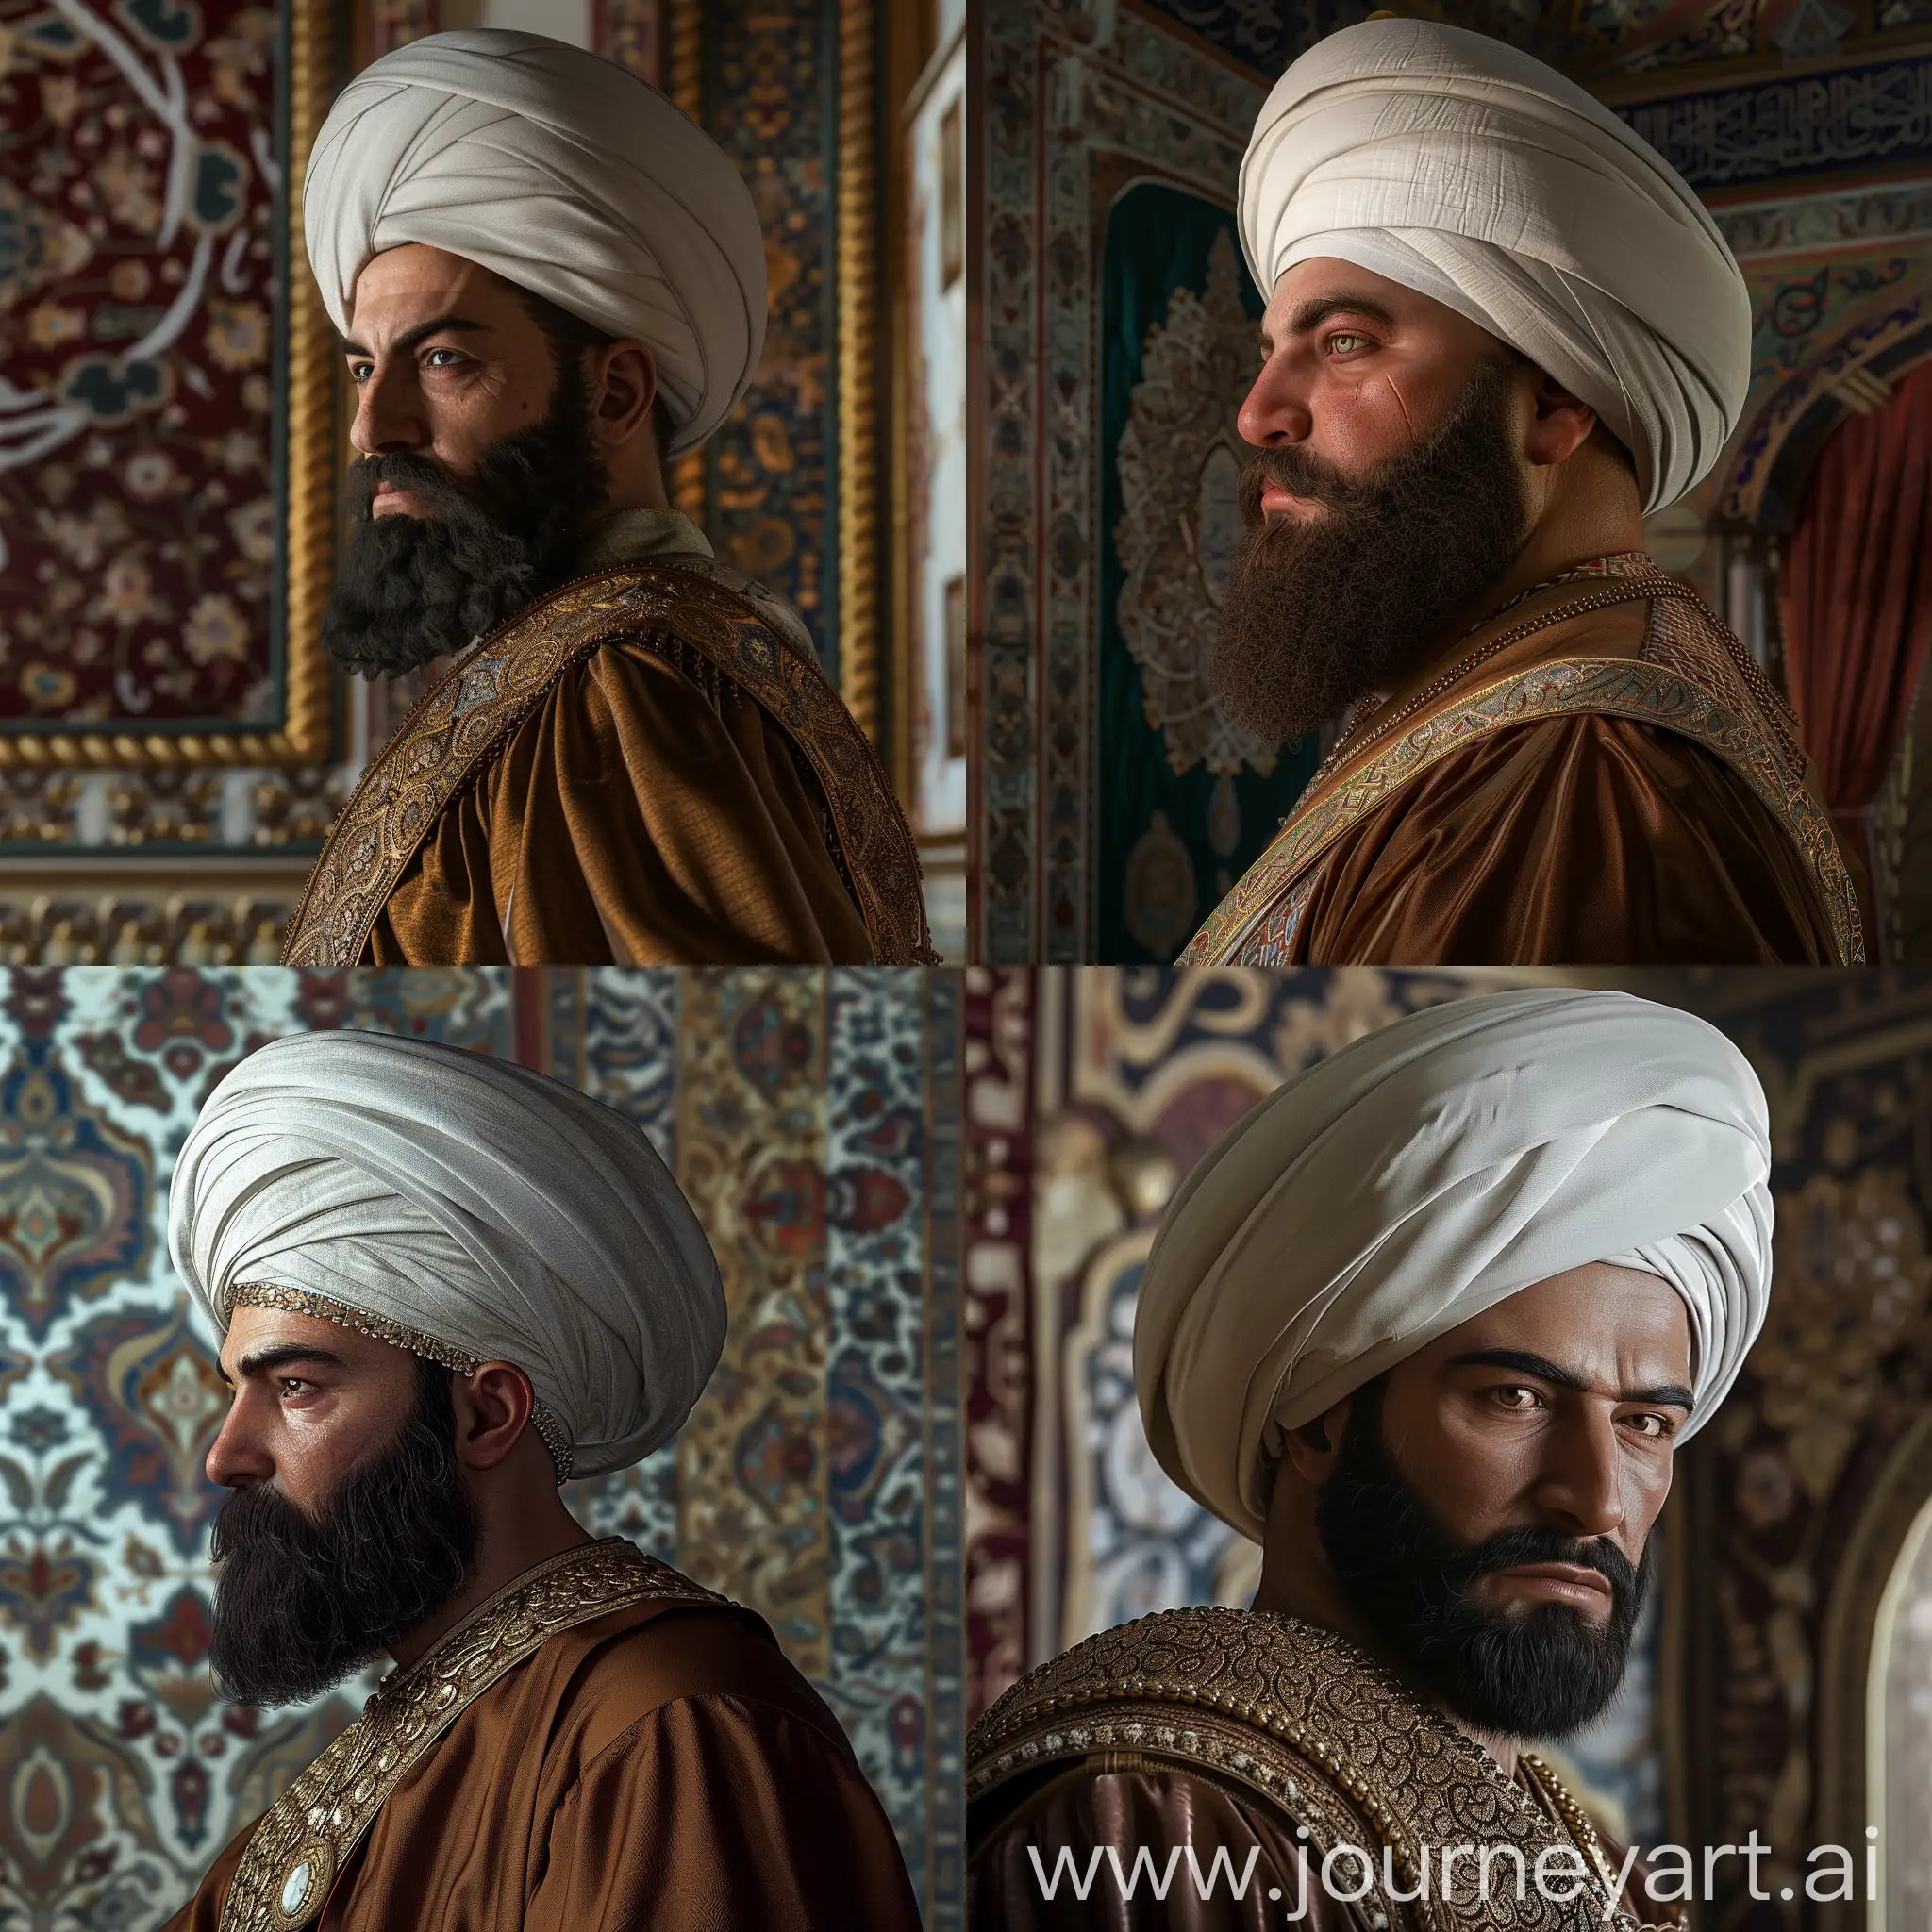 24YearOld-Ottoman-Sultan-Mehmed-II-in-Grand-Palace-Portrait